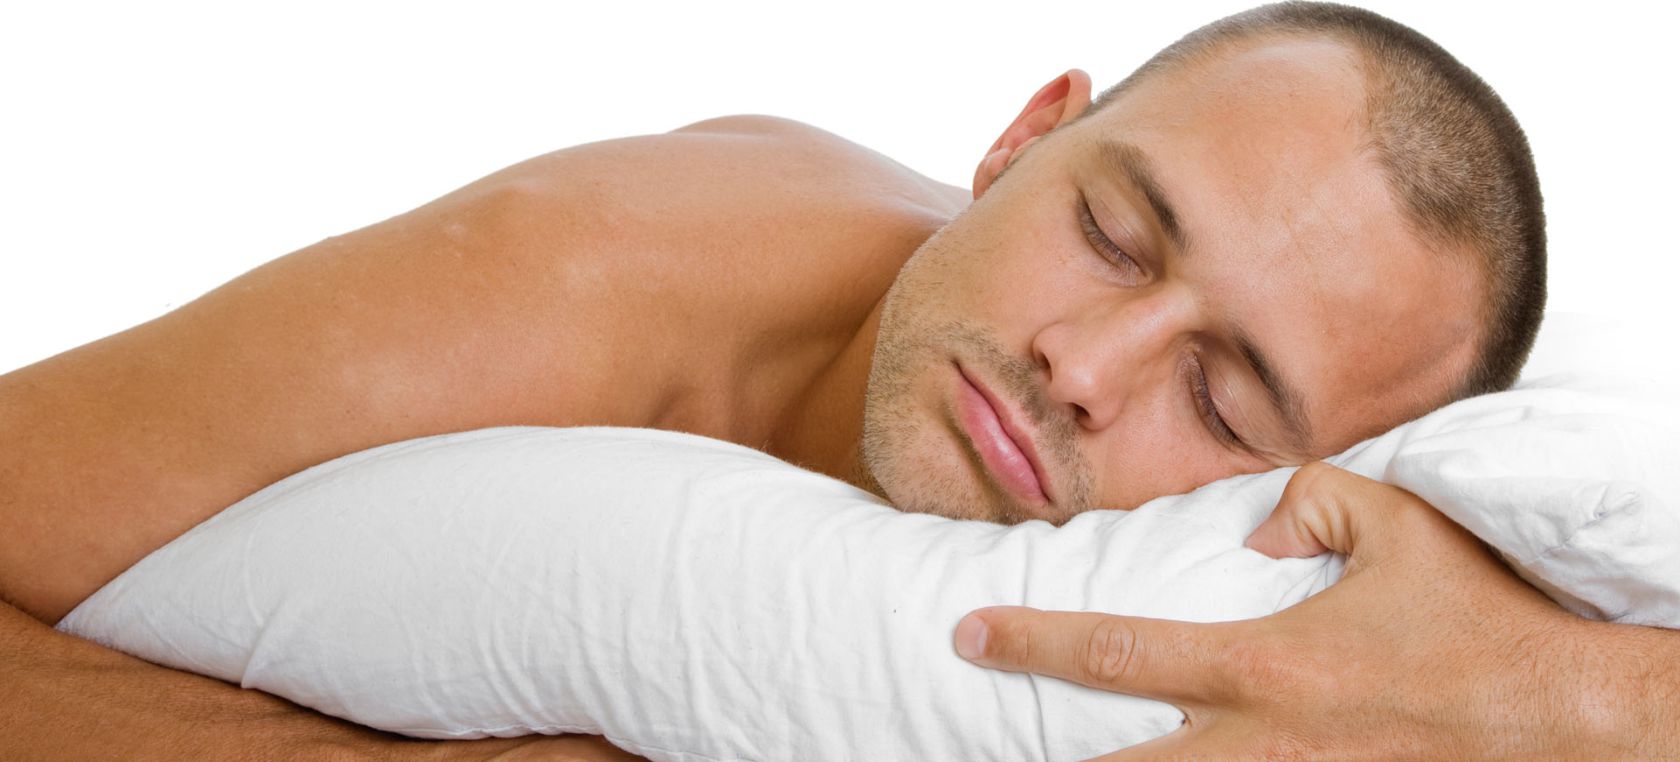 Beneficios que tiene dormir desnudo para la salud